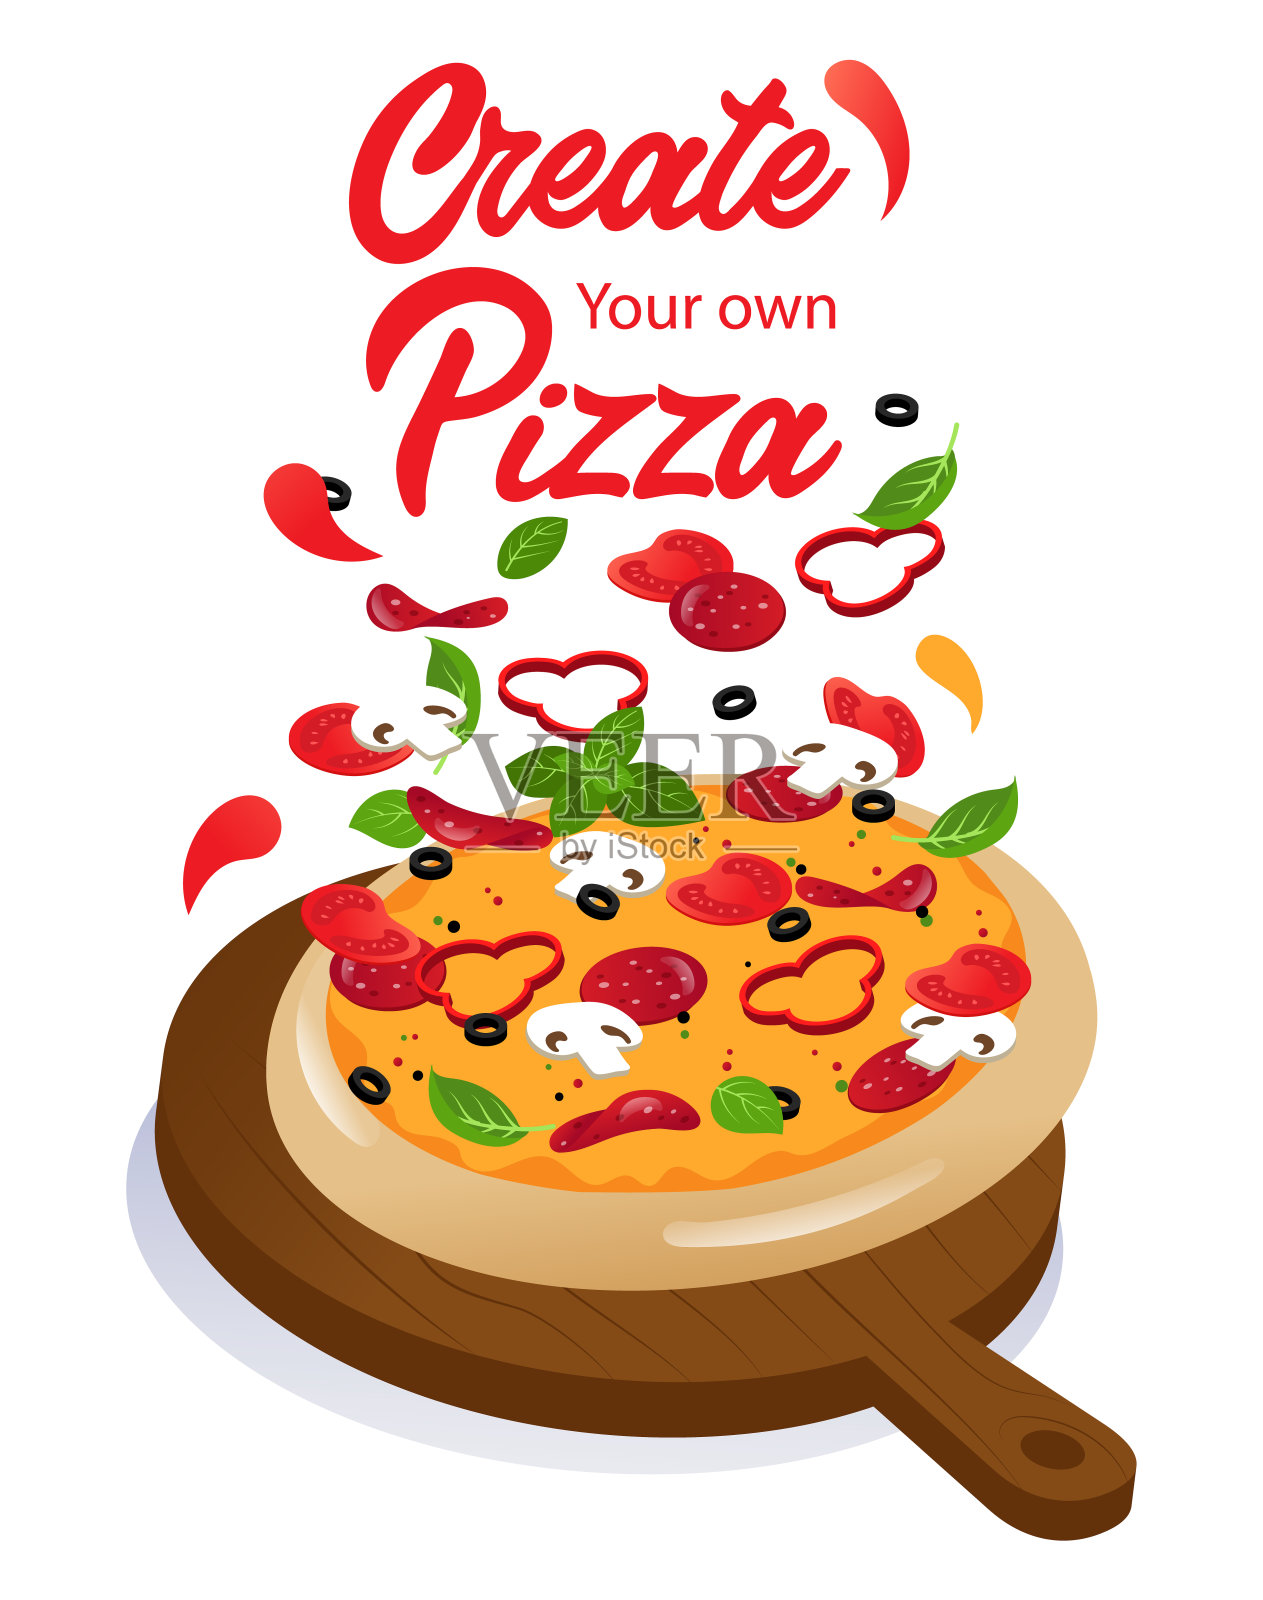 木制食品摊上的美味奶酪披萨广告。用自己的食材和网上订披萨和送披萨的可能性。卡通平面矢量插图插画图片素材